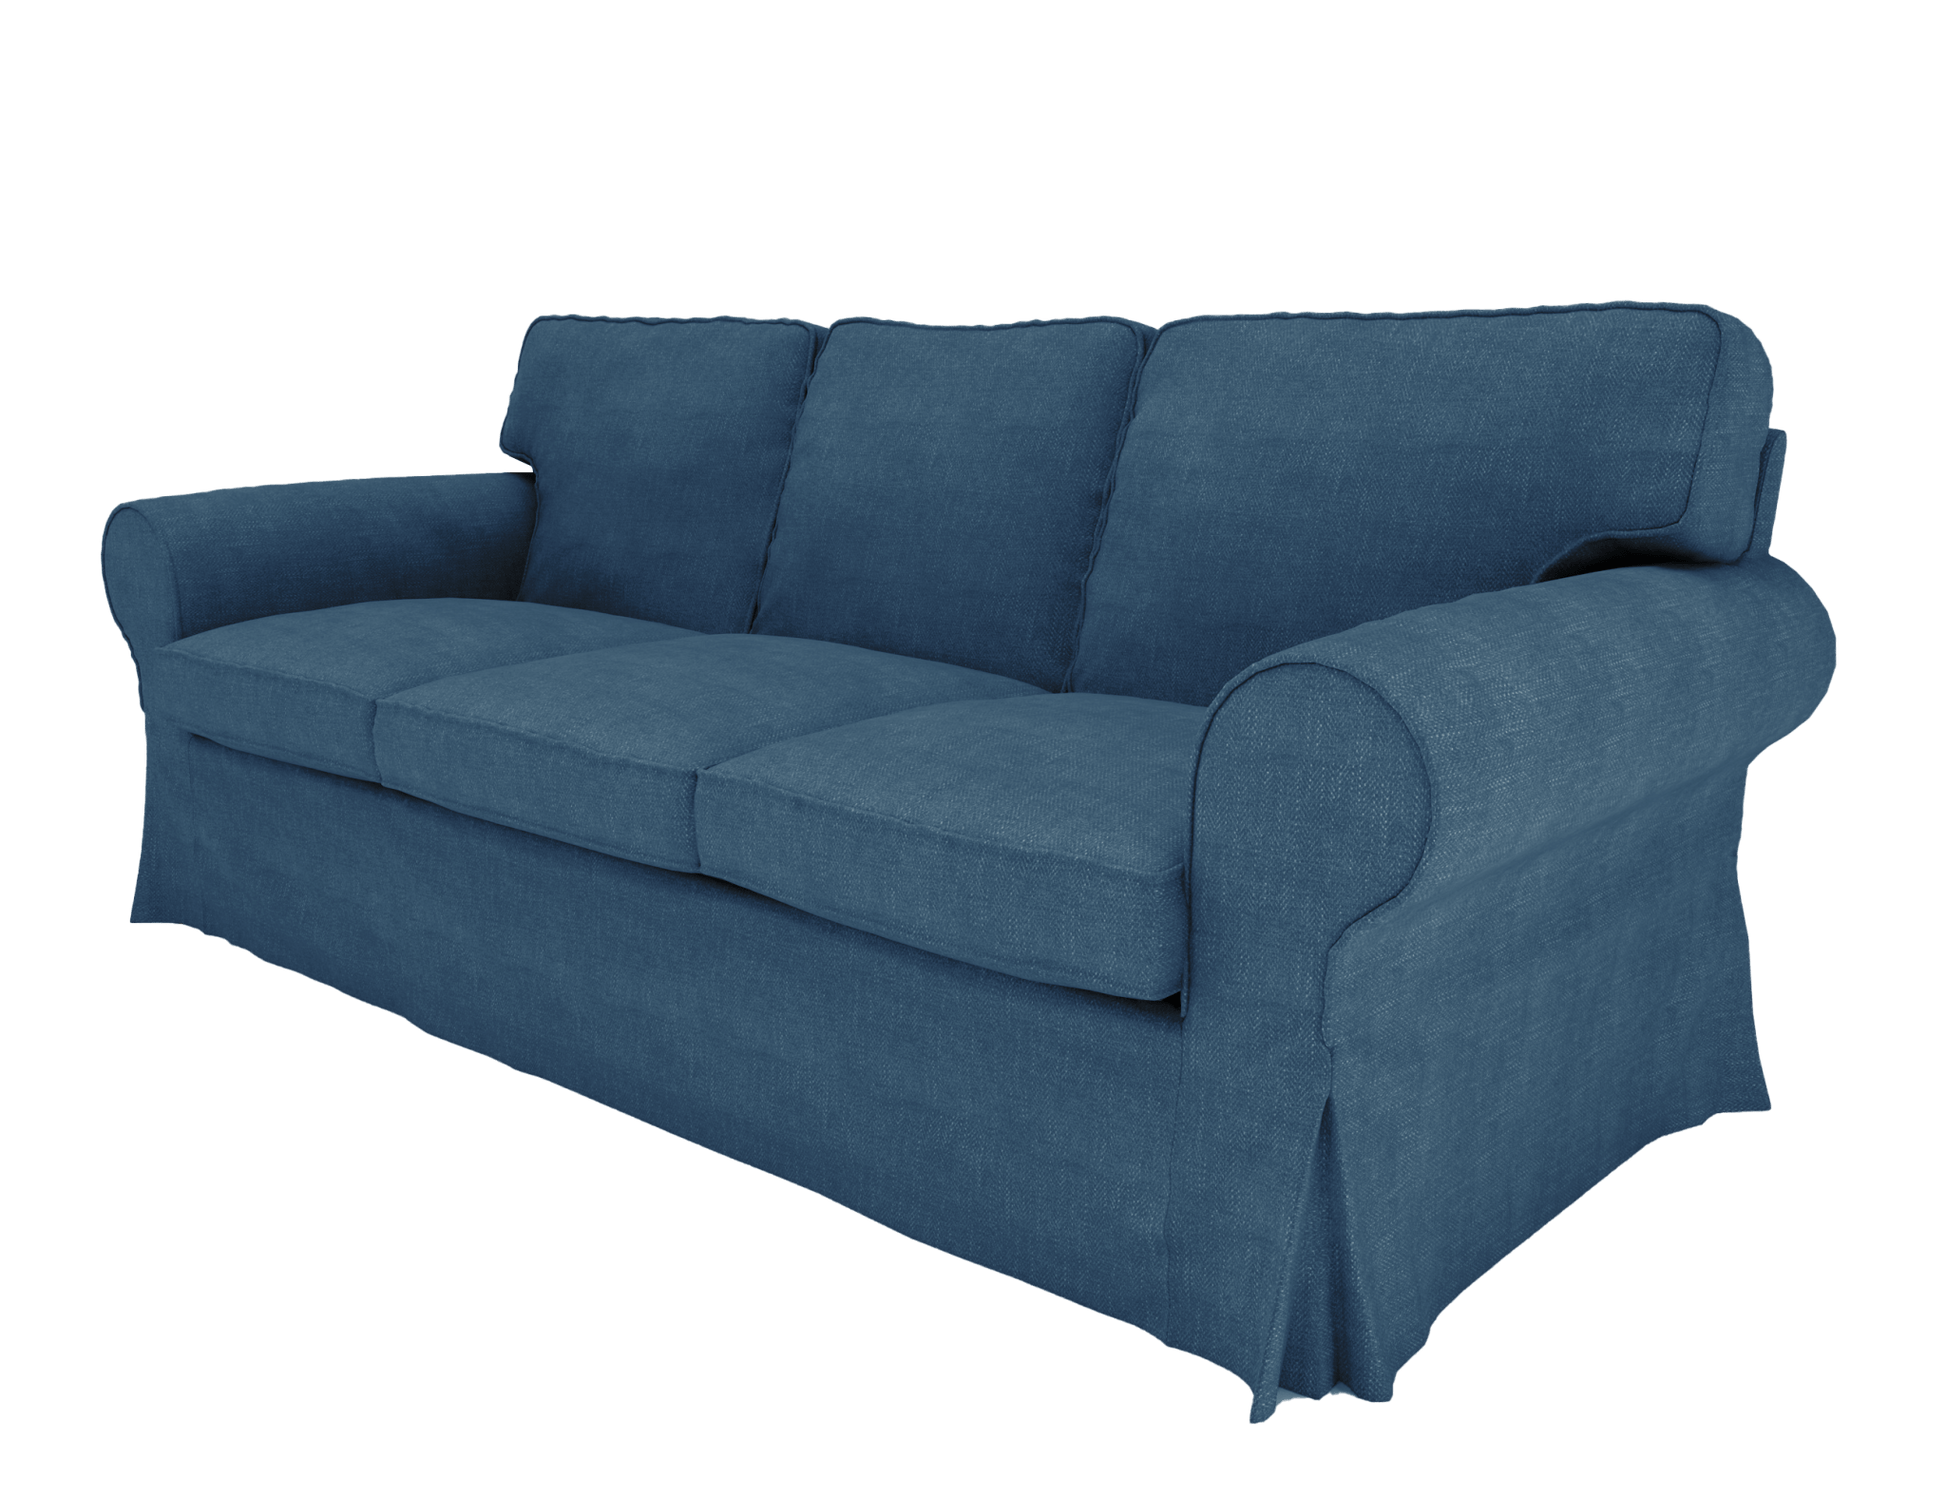 IKEA Ektorp 3 Seat Sofa Cover - Hika home